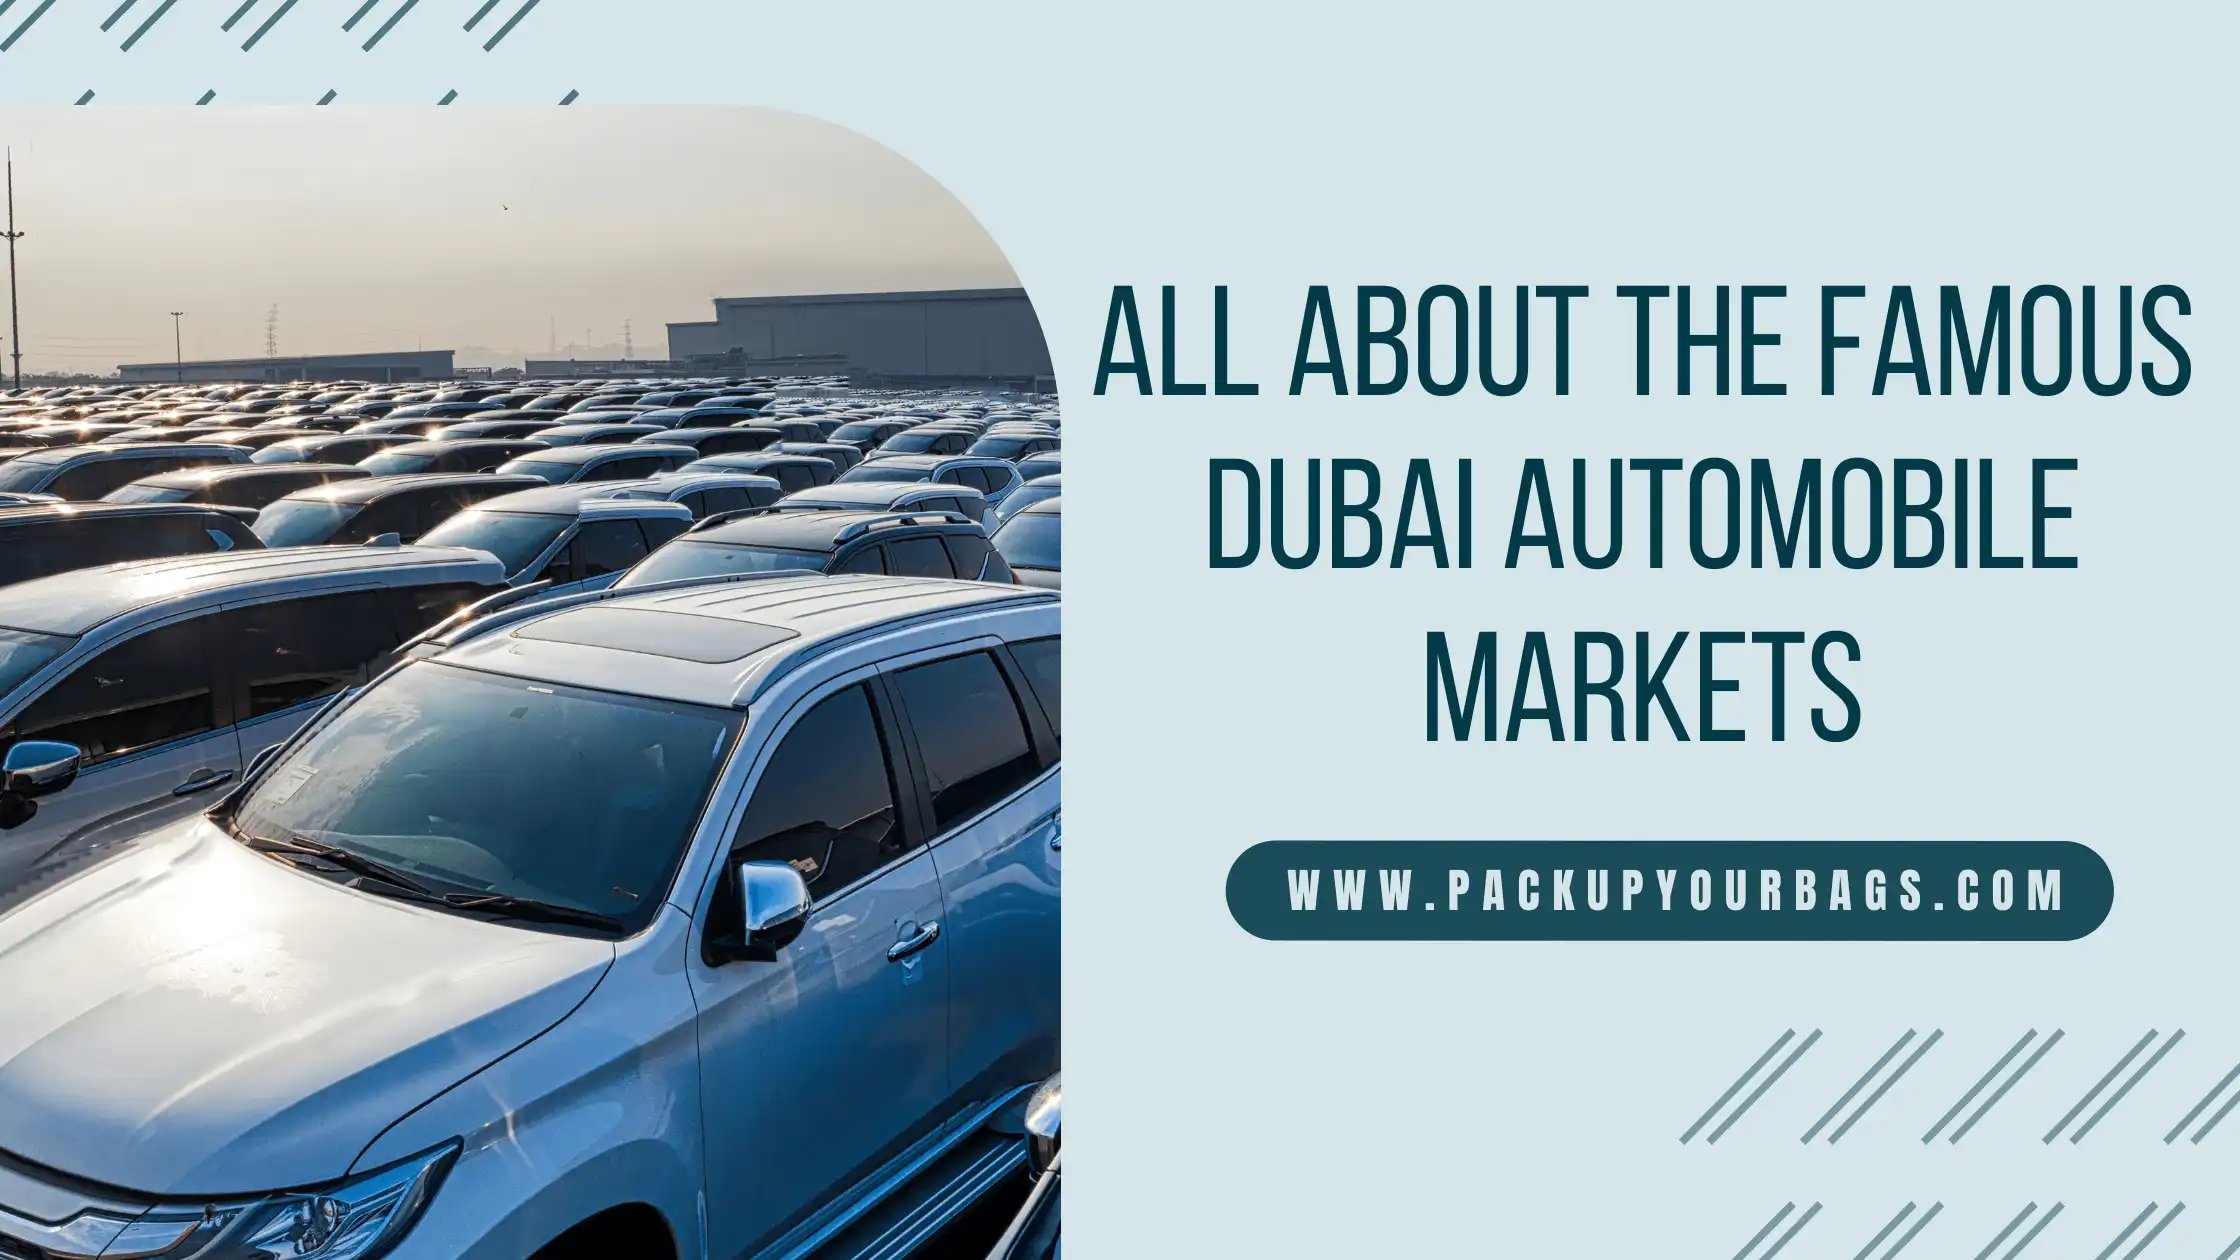 All About the famous Dubai automobile markets